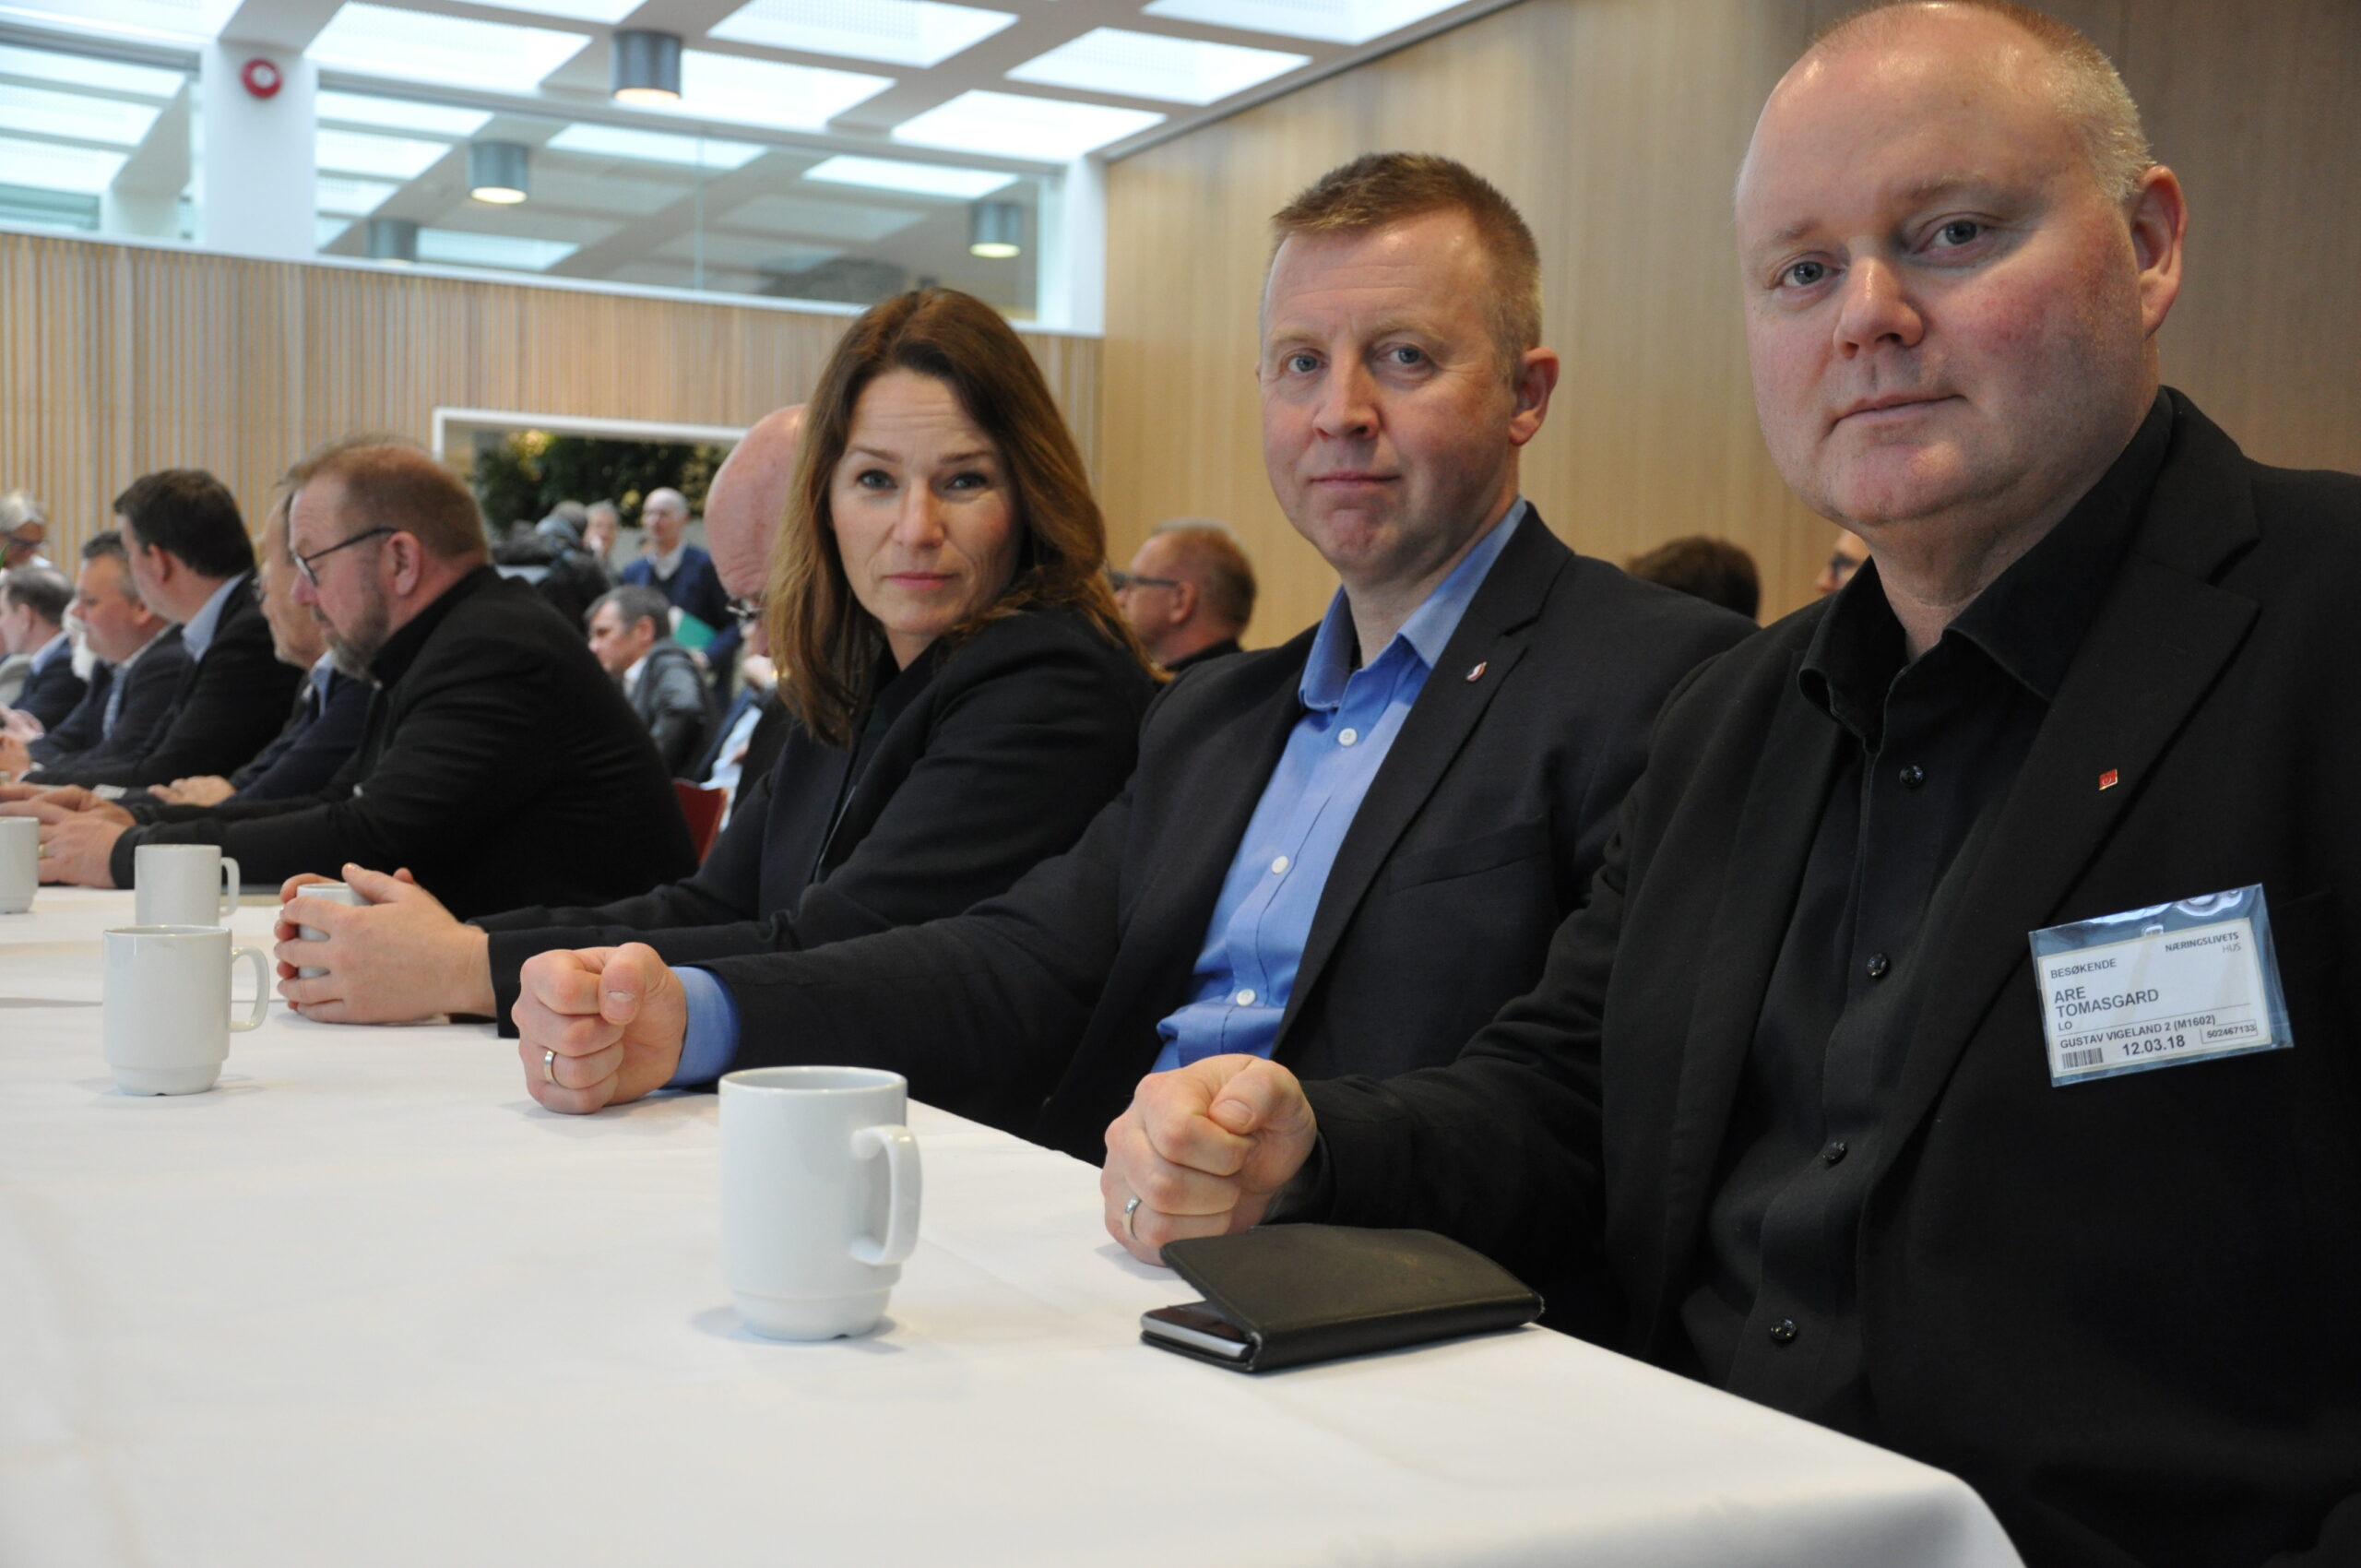 Fra venstre: HK-leder Trine Lise Sundnes, Industri Energi-leder Frode Alfheim og LO-sekretær Are Tomasgard. Her fotografert da kravene ble overlevert til NHO den 12. mars.